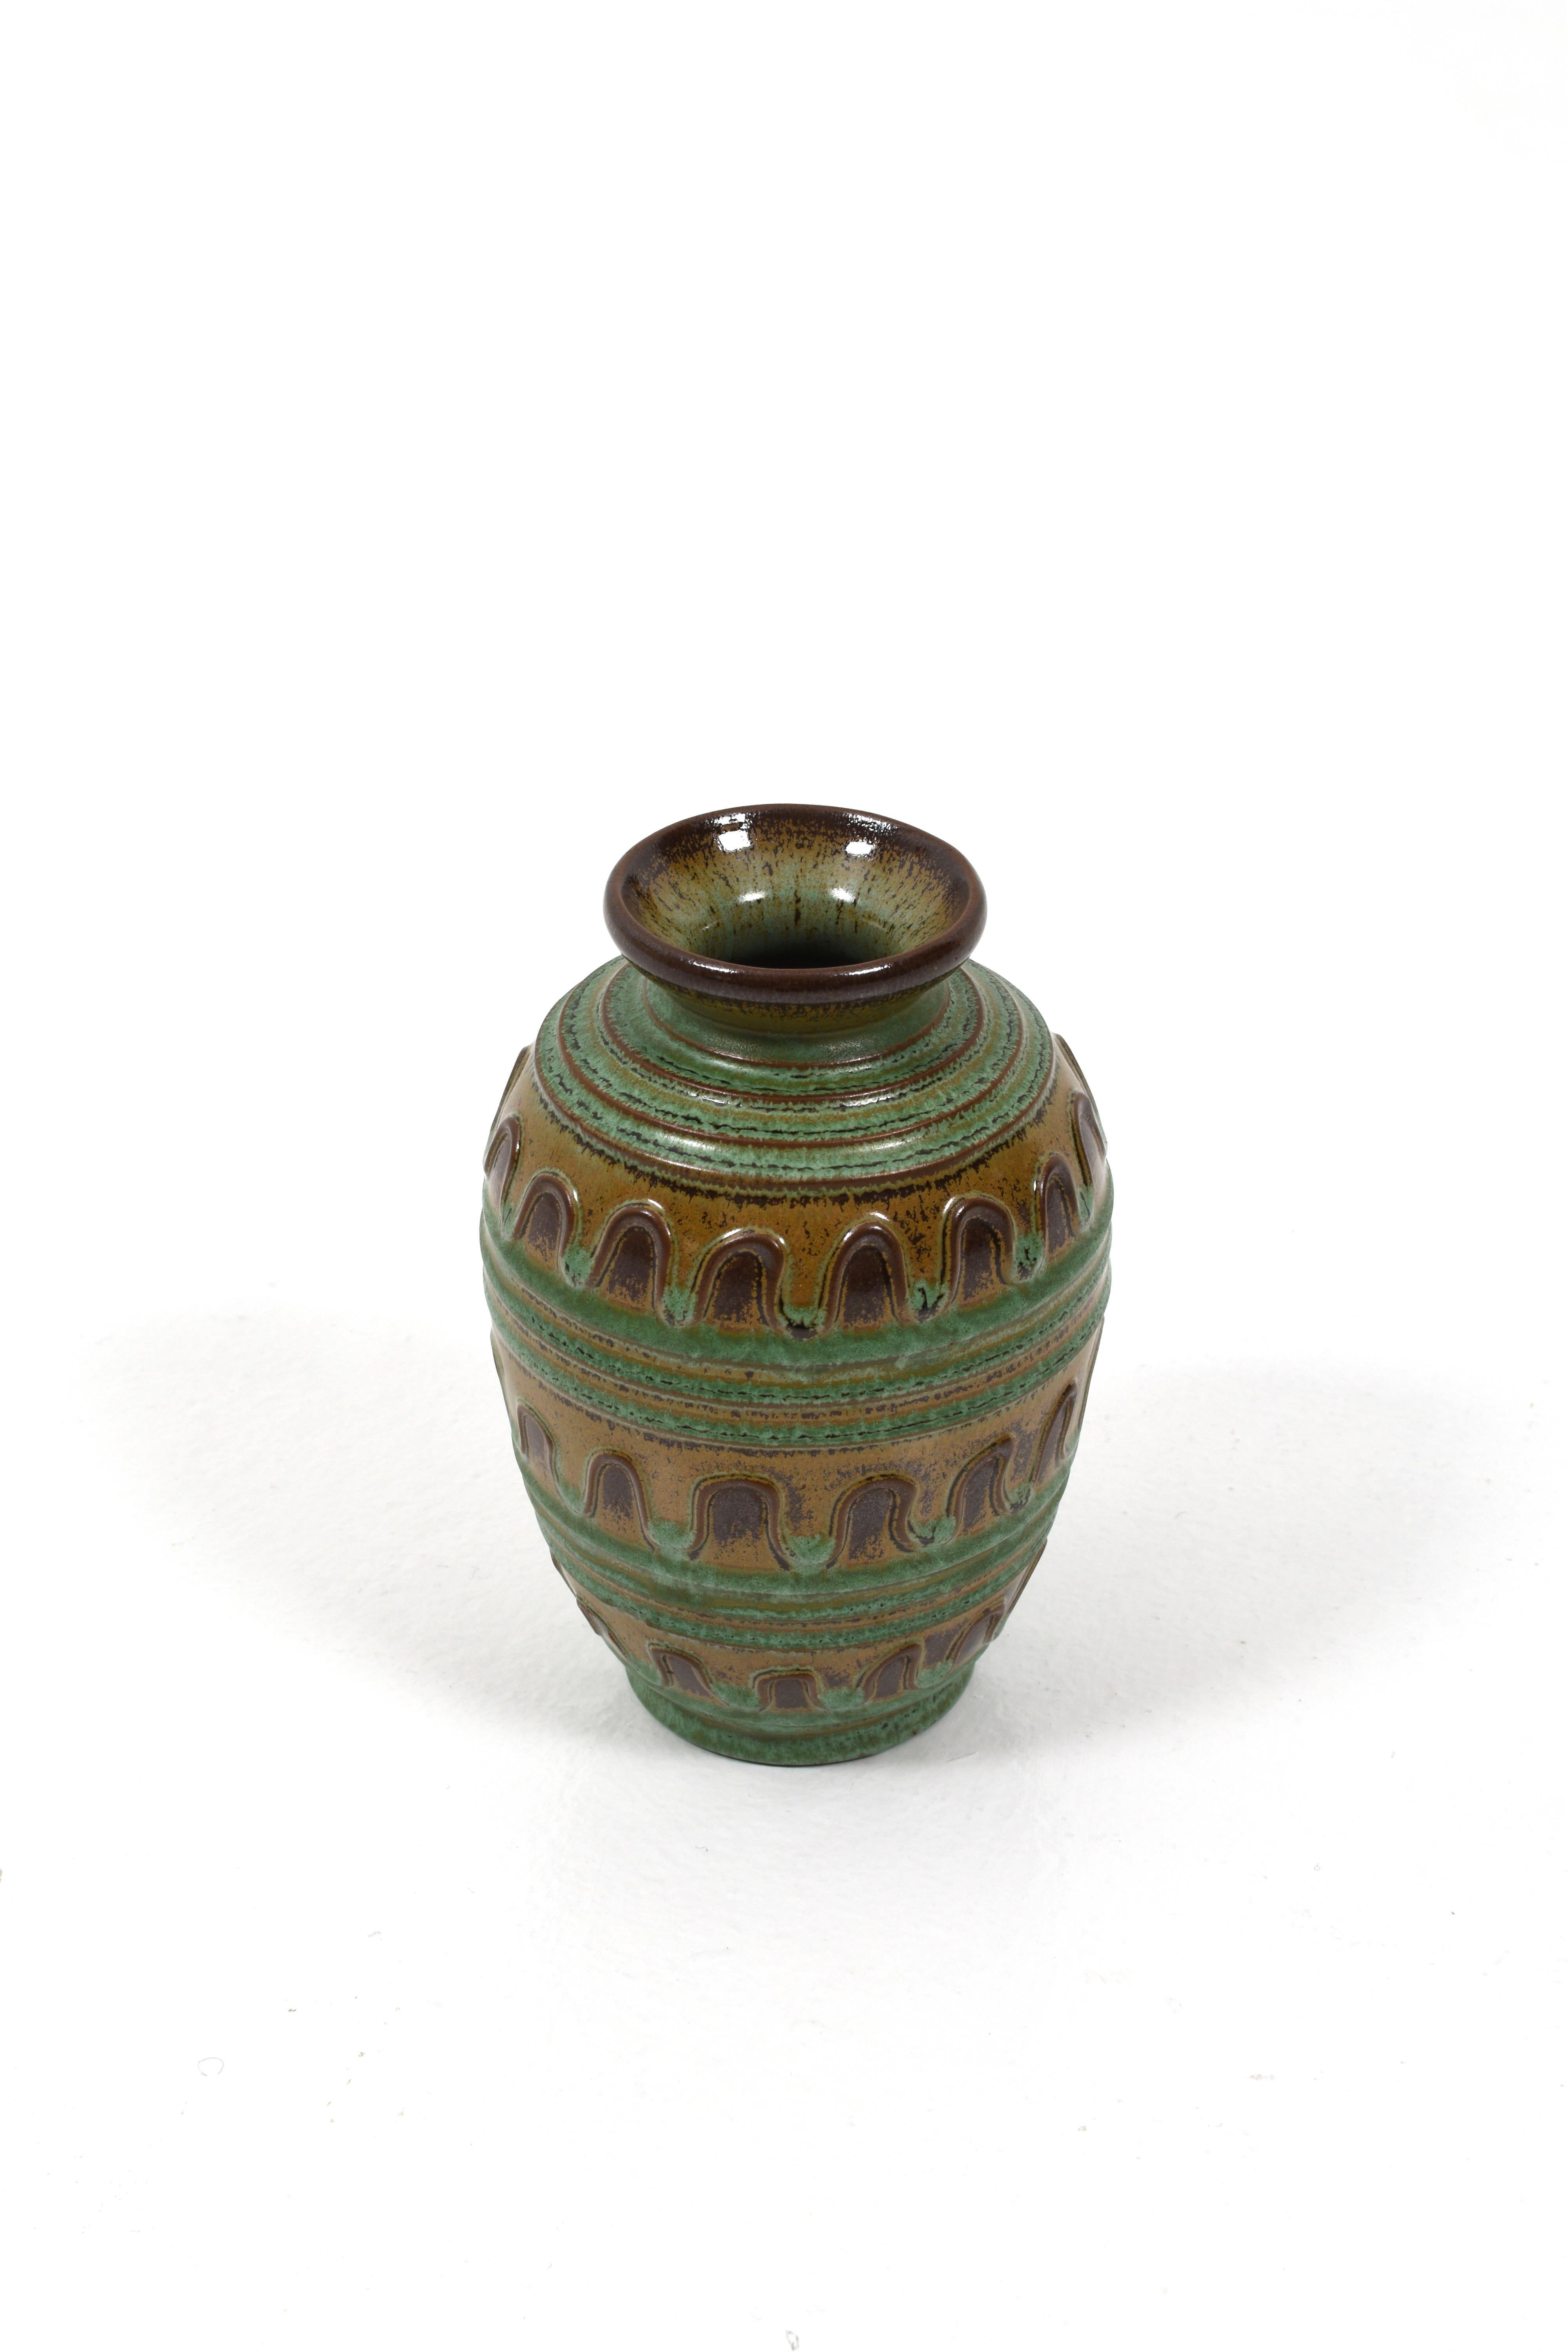 Vase en céramique verte et brune d'Erik Mornils pour Nittsjö, vers les années 1930.
Le vase porte une signature à la base et est en très bon état.

Si vous voulez une paire, nous en avons une de plus en stock. Contactez-nous et nous pourrons vous